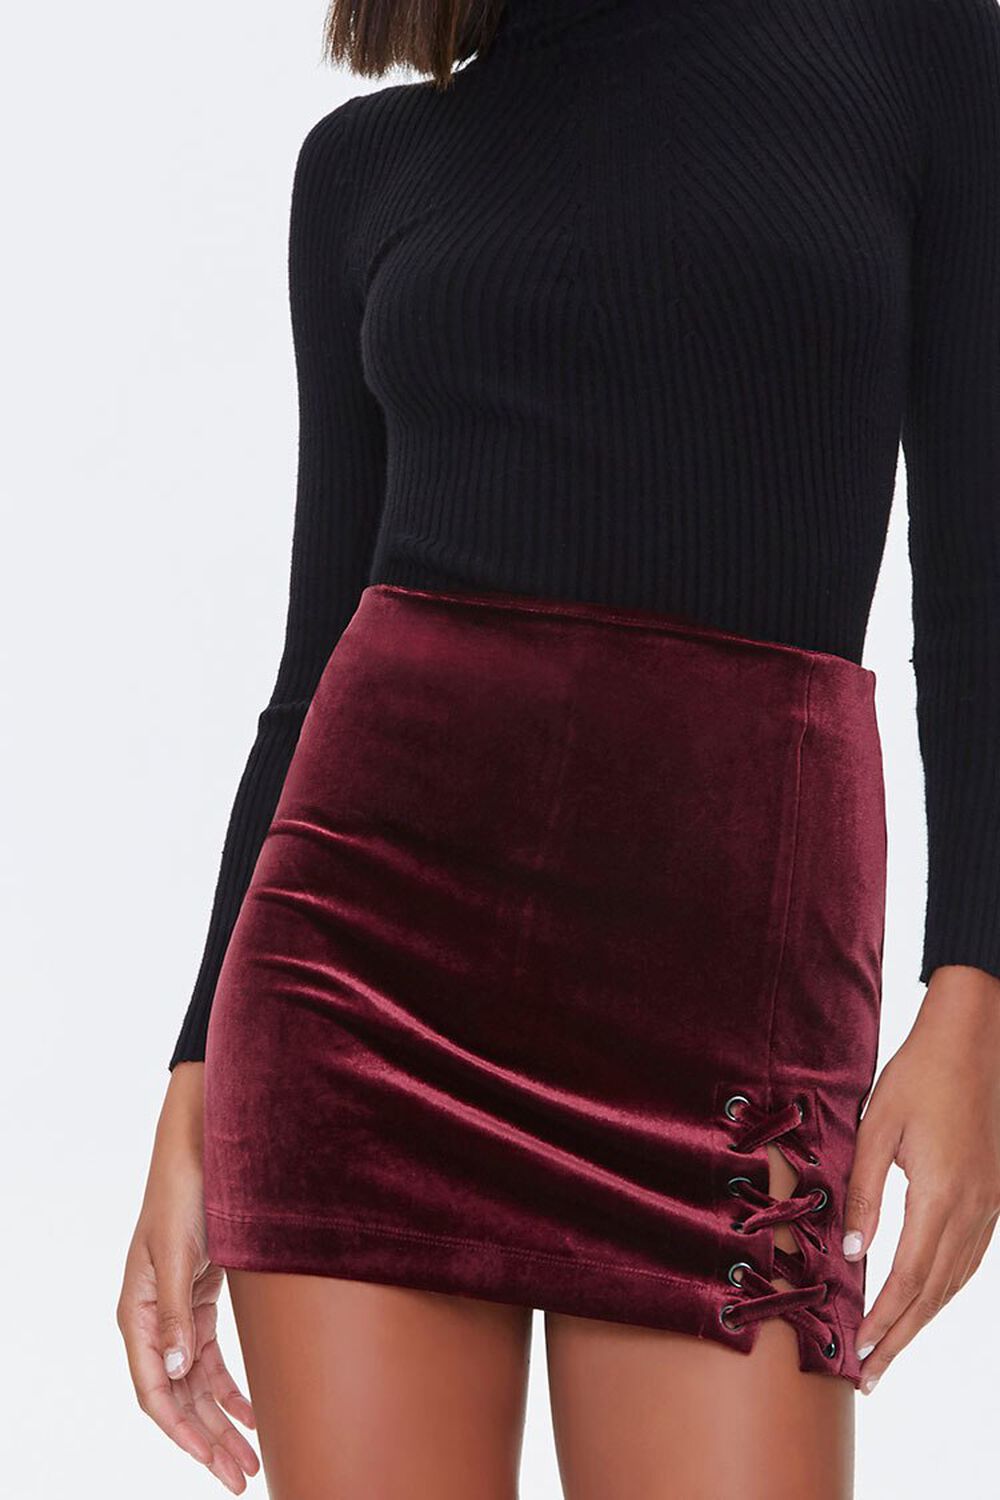 BURGUNDY Lace-Up Velvet Mini Skirt, image 1